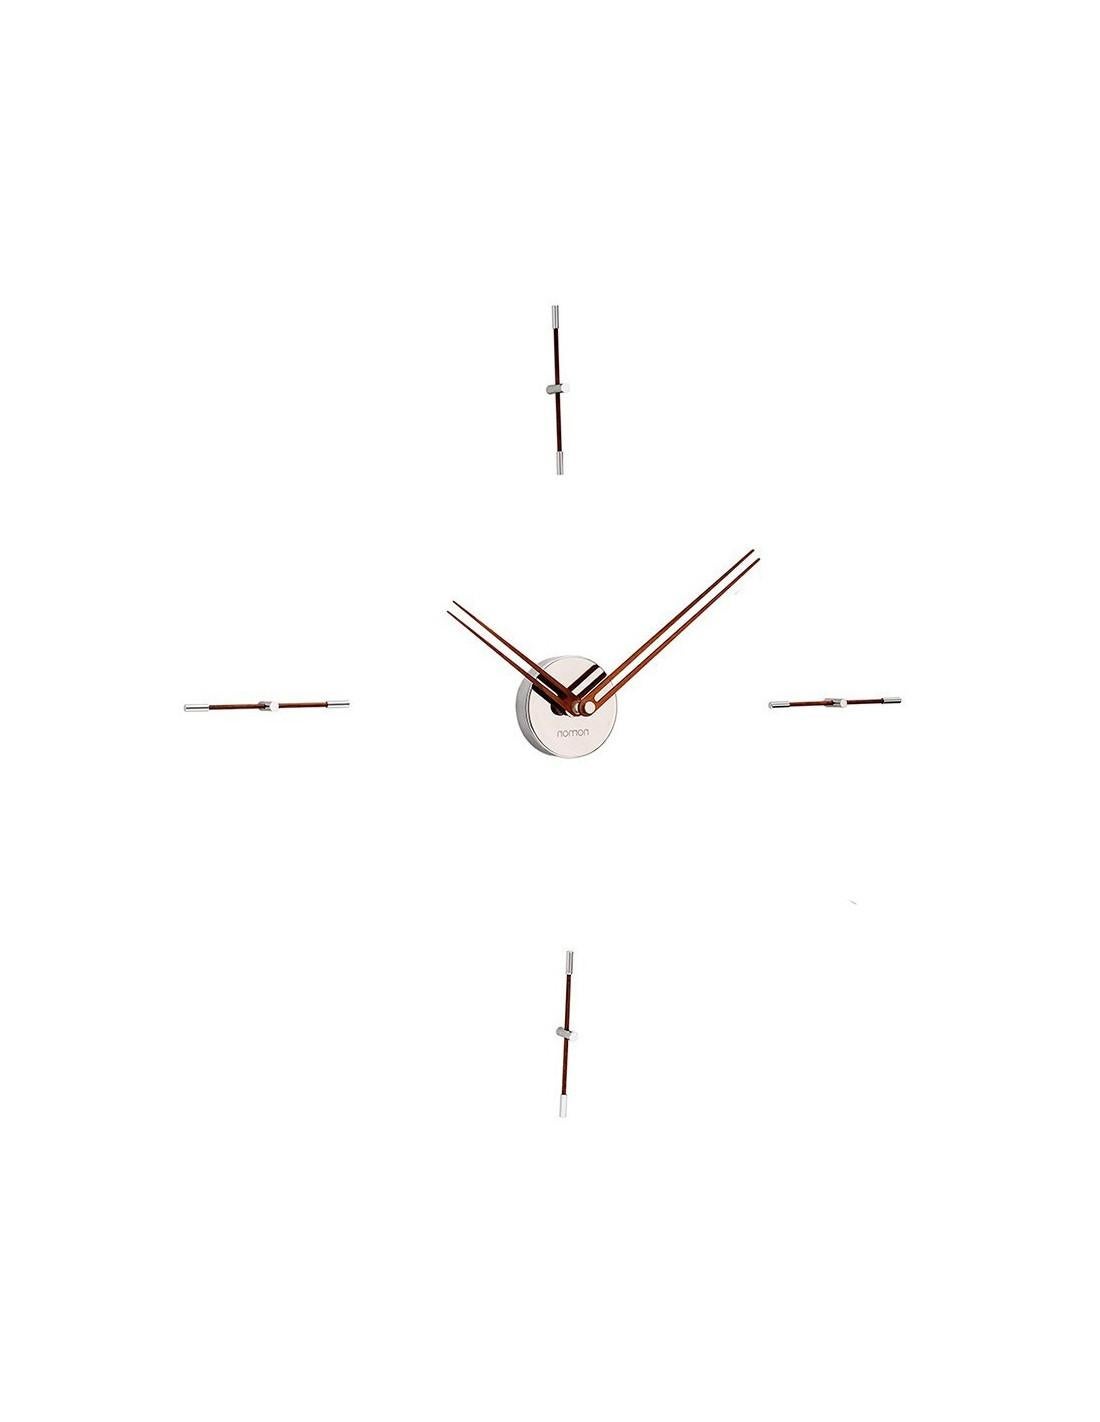 Horloge simple, polyvalente et sobre. L'élégance de ce modèle réside dans la légèreté de ses signaux horaires, qui dessinent un cercle imaginaire sur le mur.
Mini horloge murale Merlín 4 N : Bois et Chrome.
Chaque horloge est une pièce unique